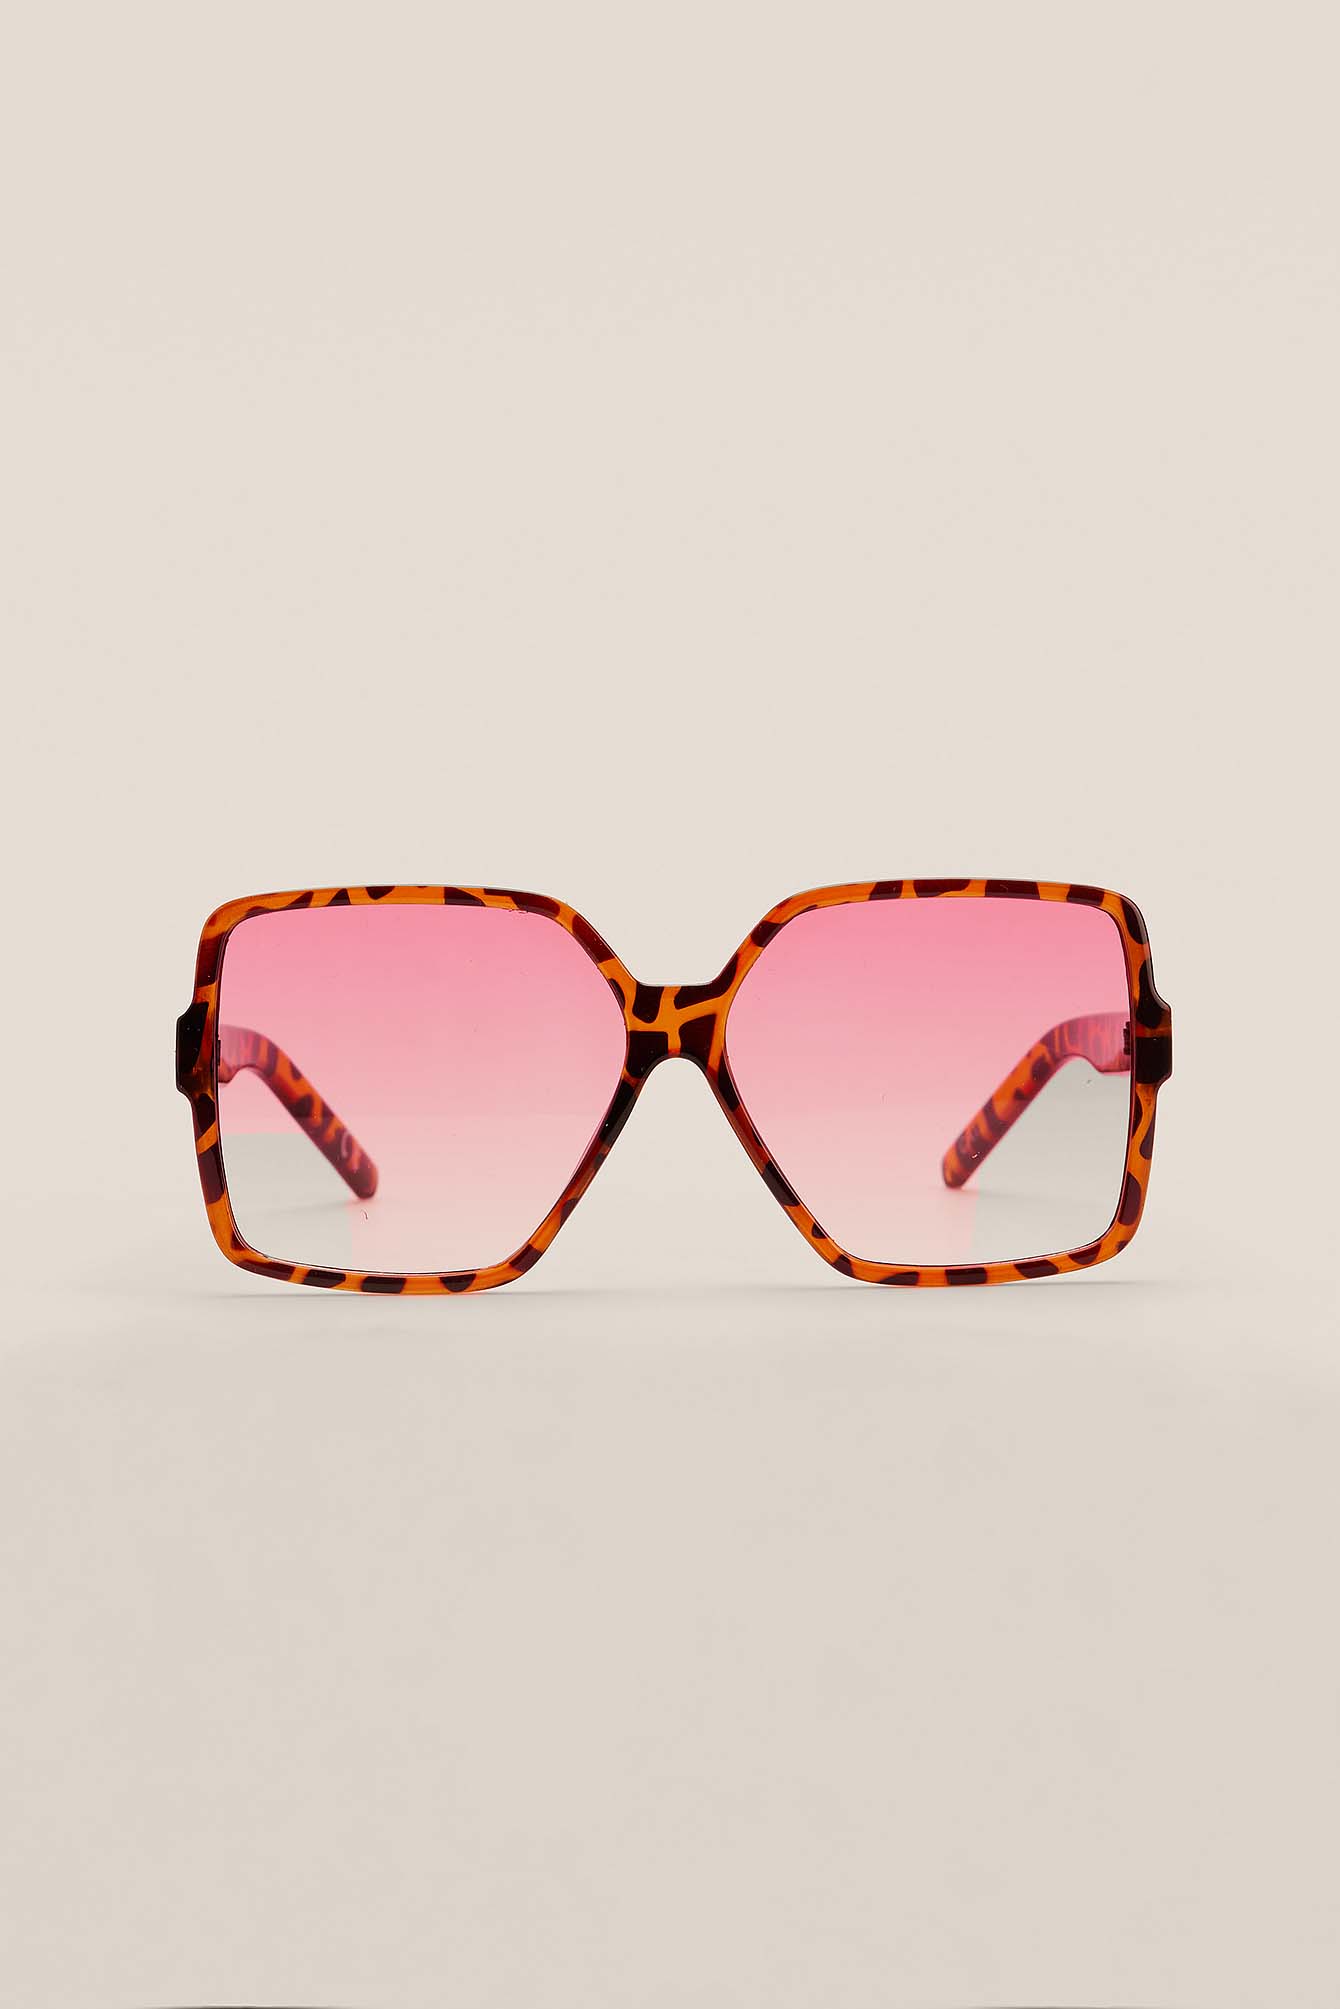 Tortois Grandes lunettes de soleil style années 70